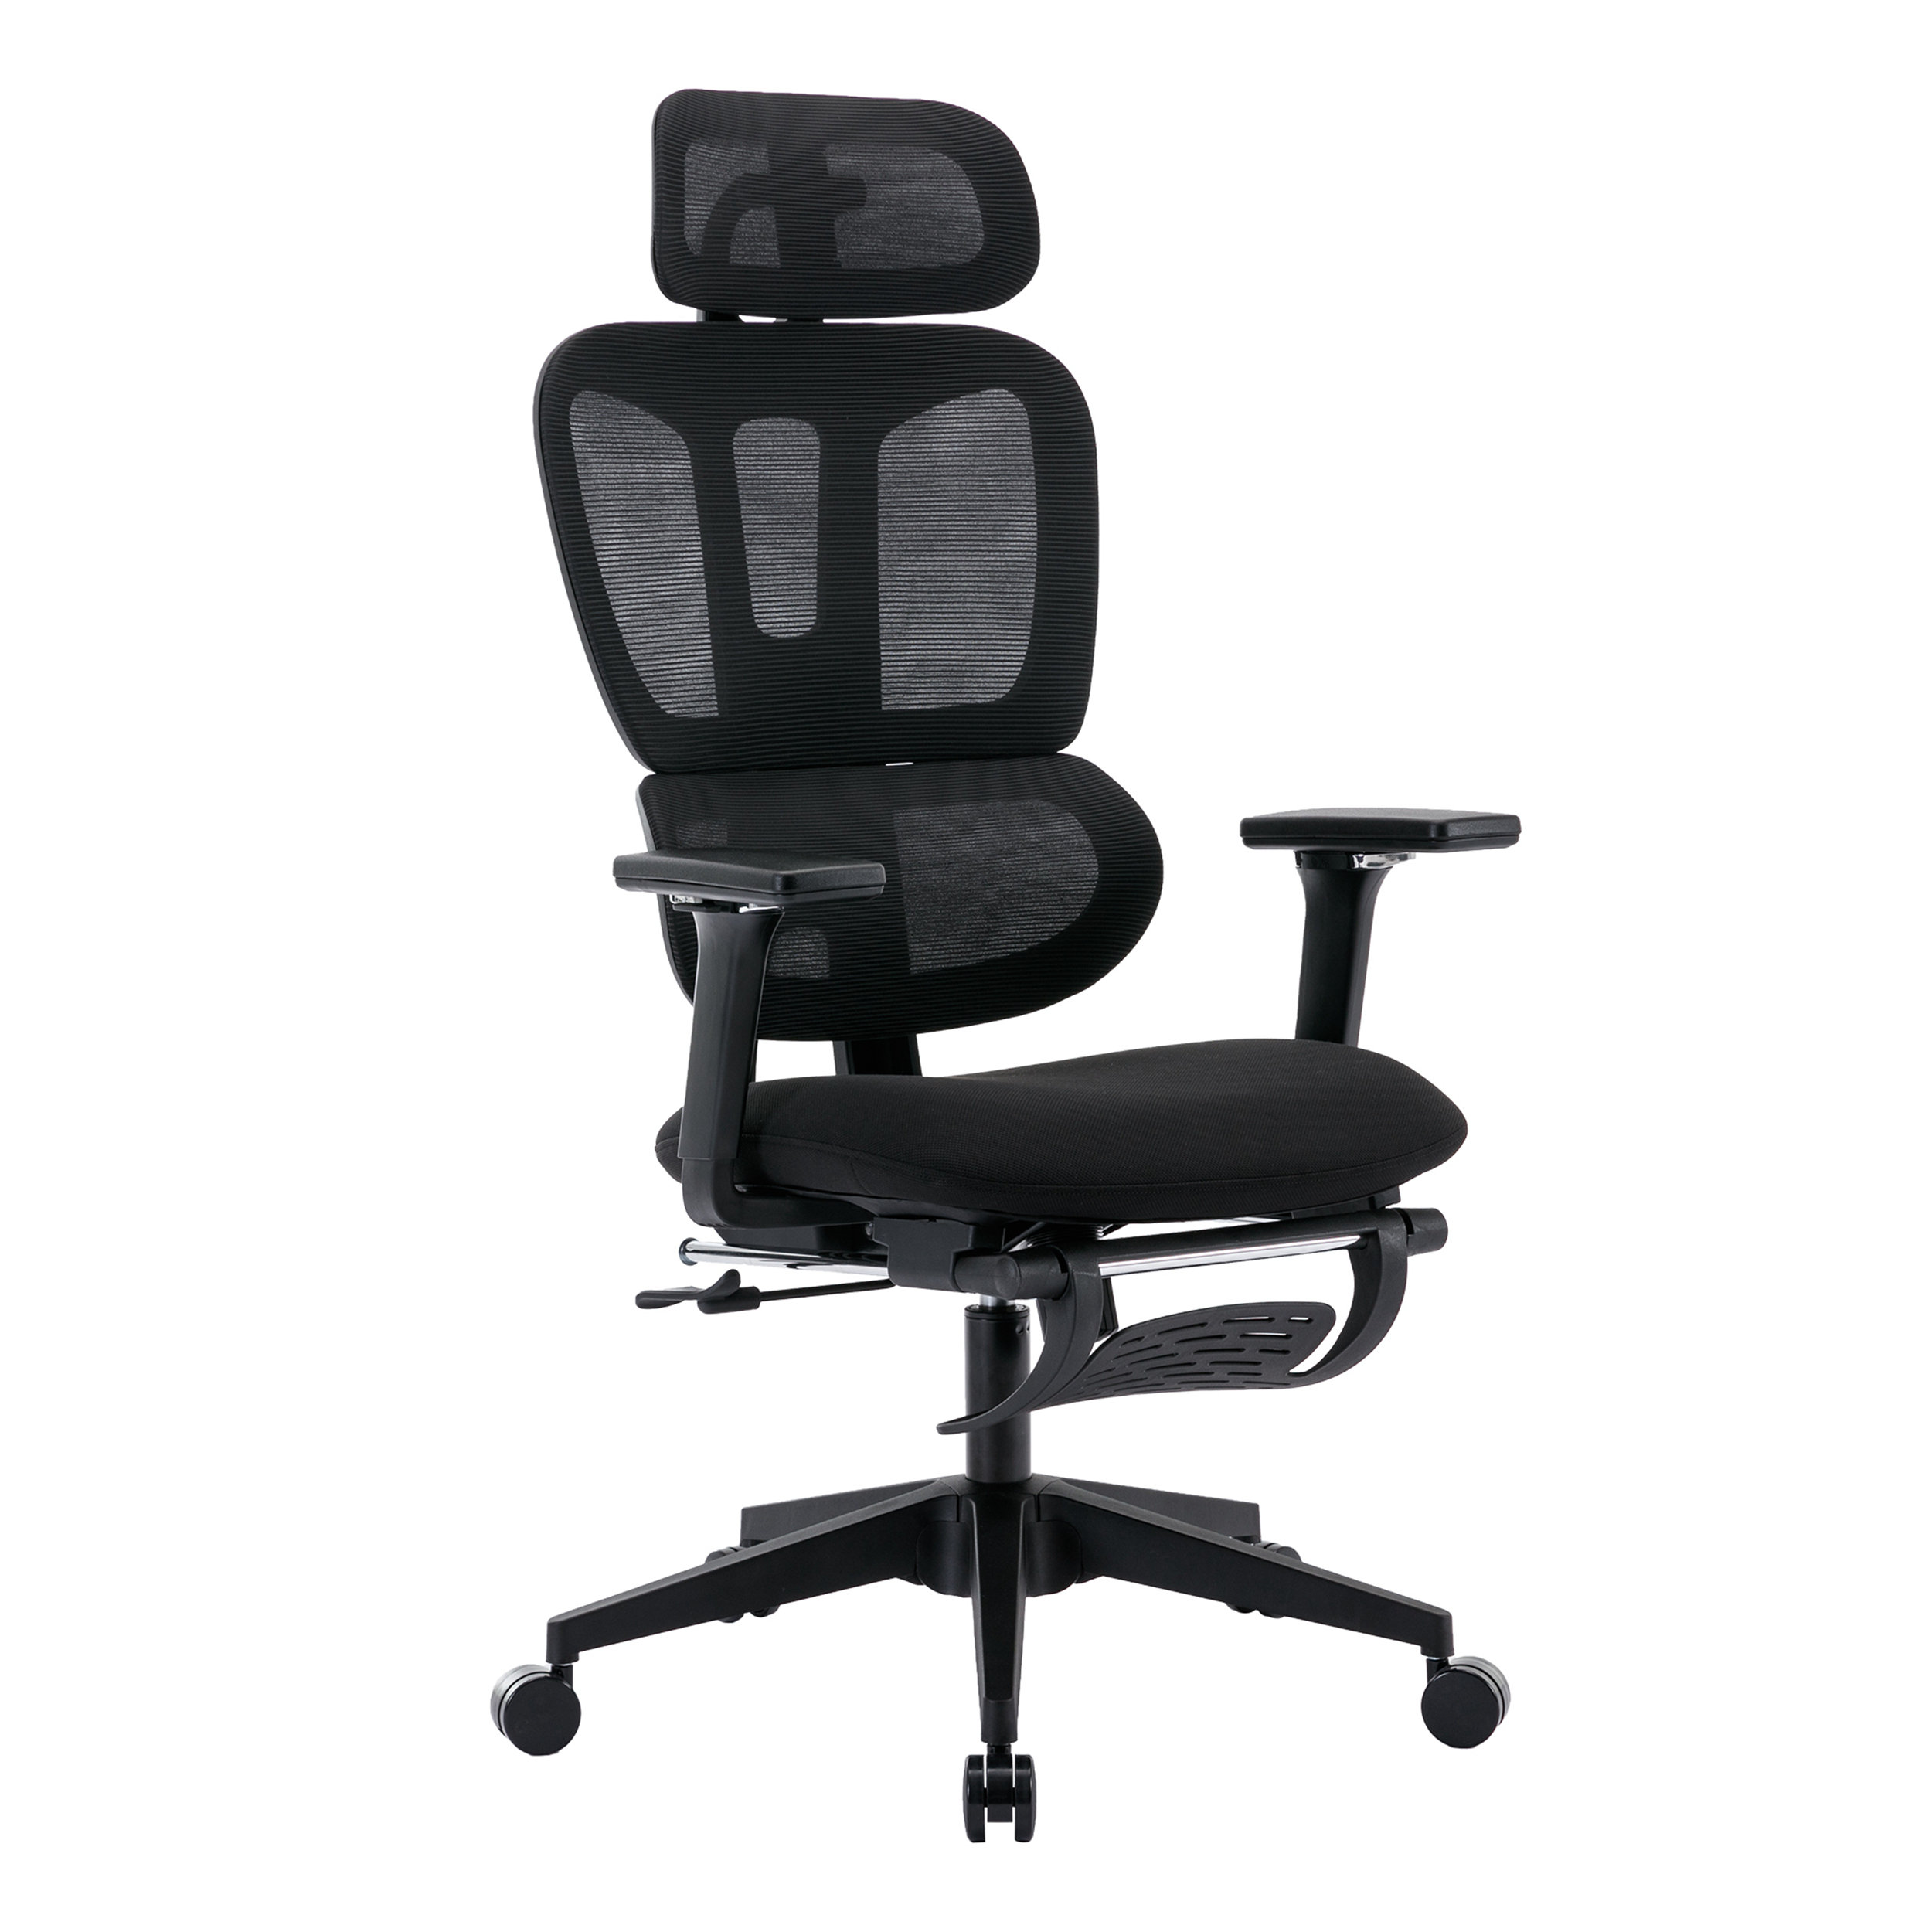  Office Chair Ergonomic Cheap Desk Chair Mesh Computer